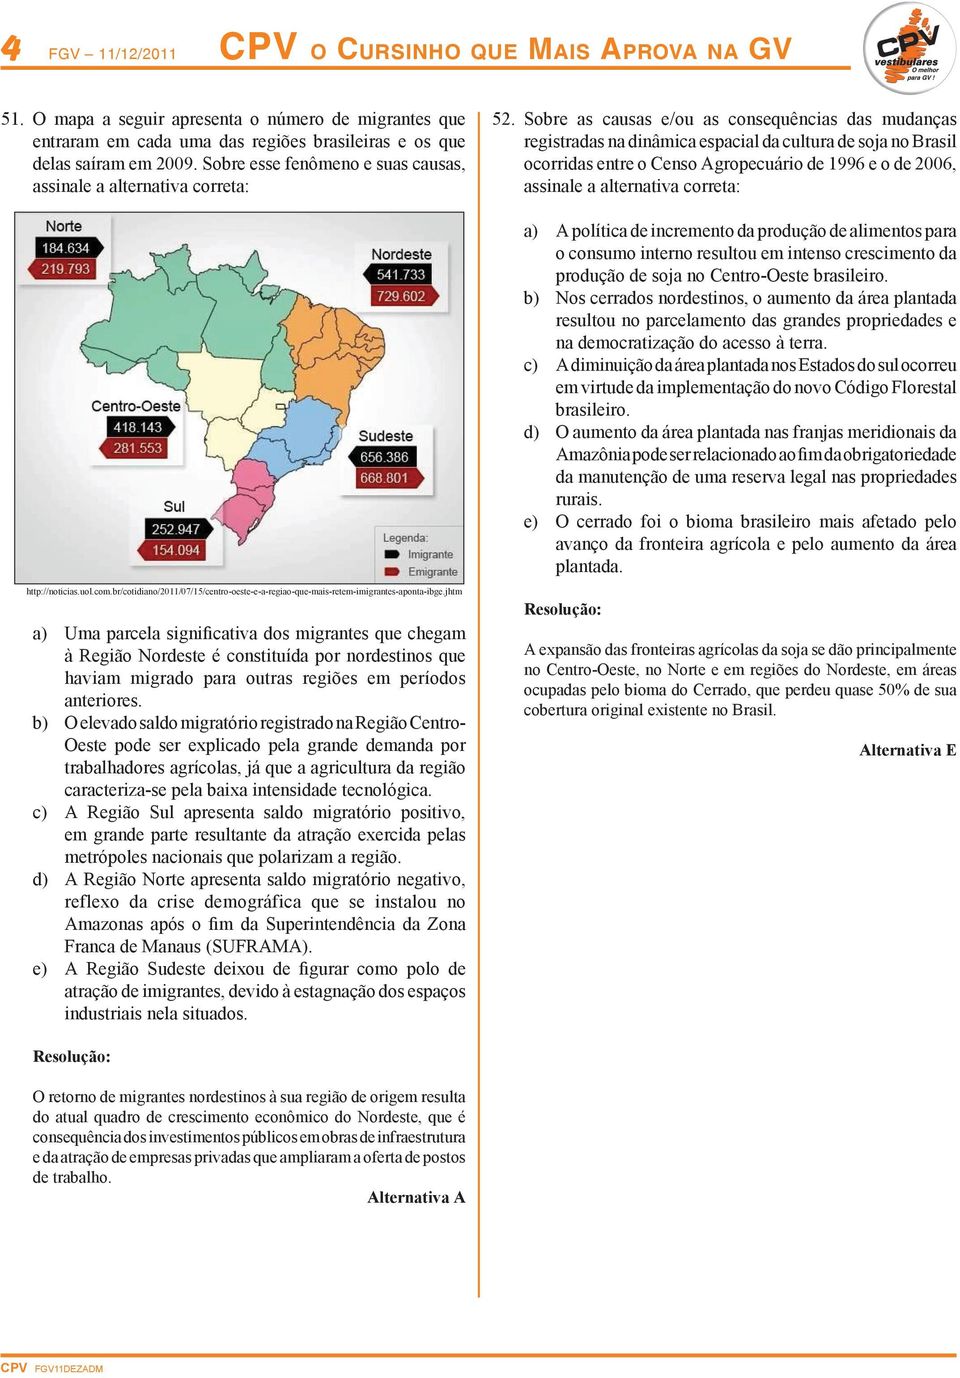 Sobre as causas e/ou as consequências das mudanças registradas na dinâmica espacial da cultura de soja no Brasil ocorridas entre o Censo Agropecuário de 1996 e o de 2006, assinale a alternativa